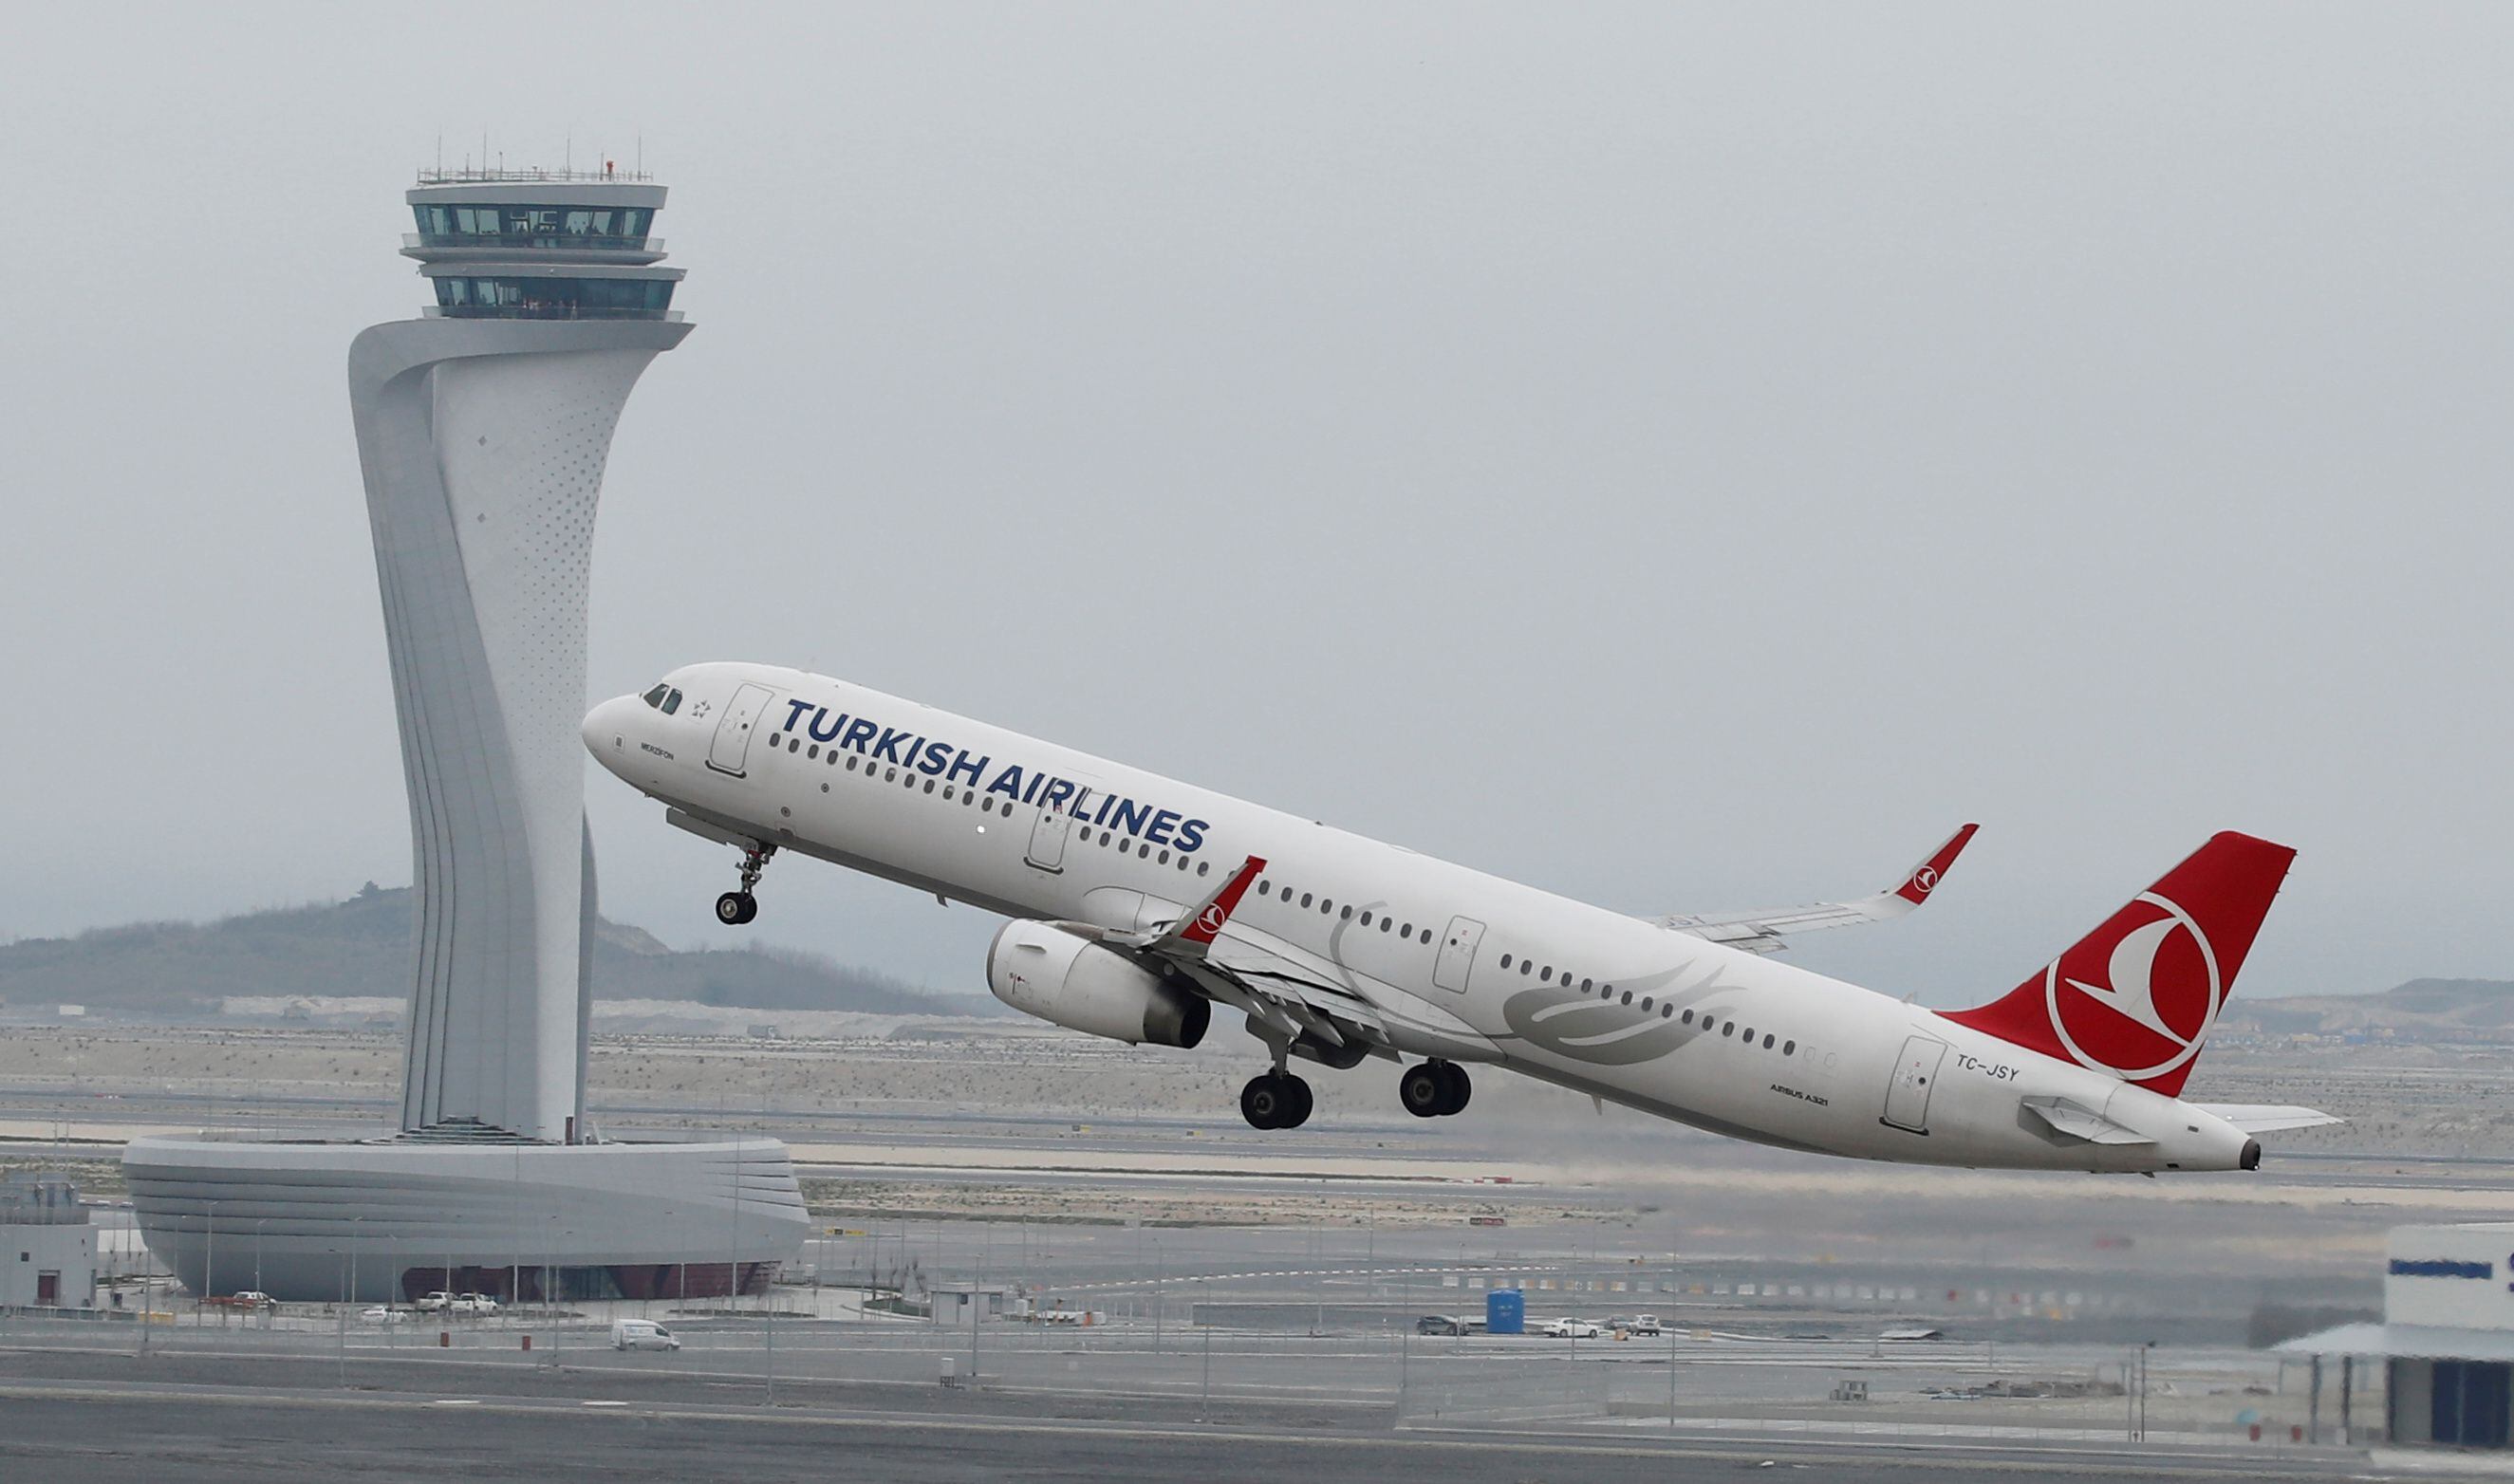 La empresa Turkish Airlines dio aviso a 200 pasajeros de que no había boletos reservados a su nombre. REUTERS